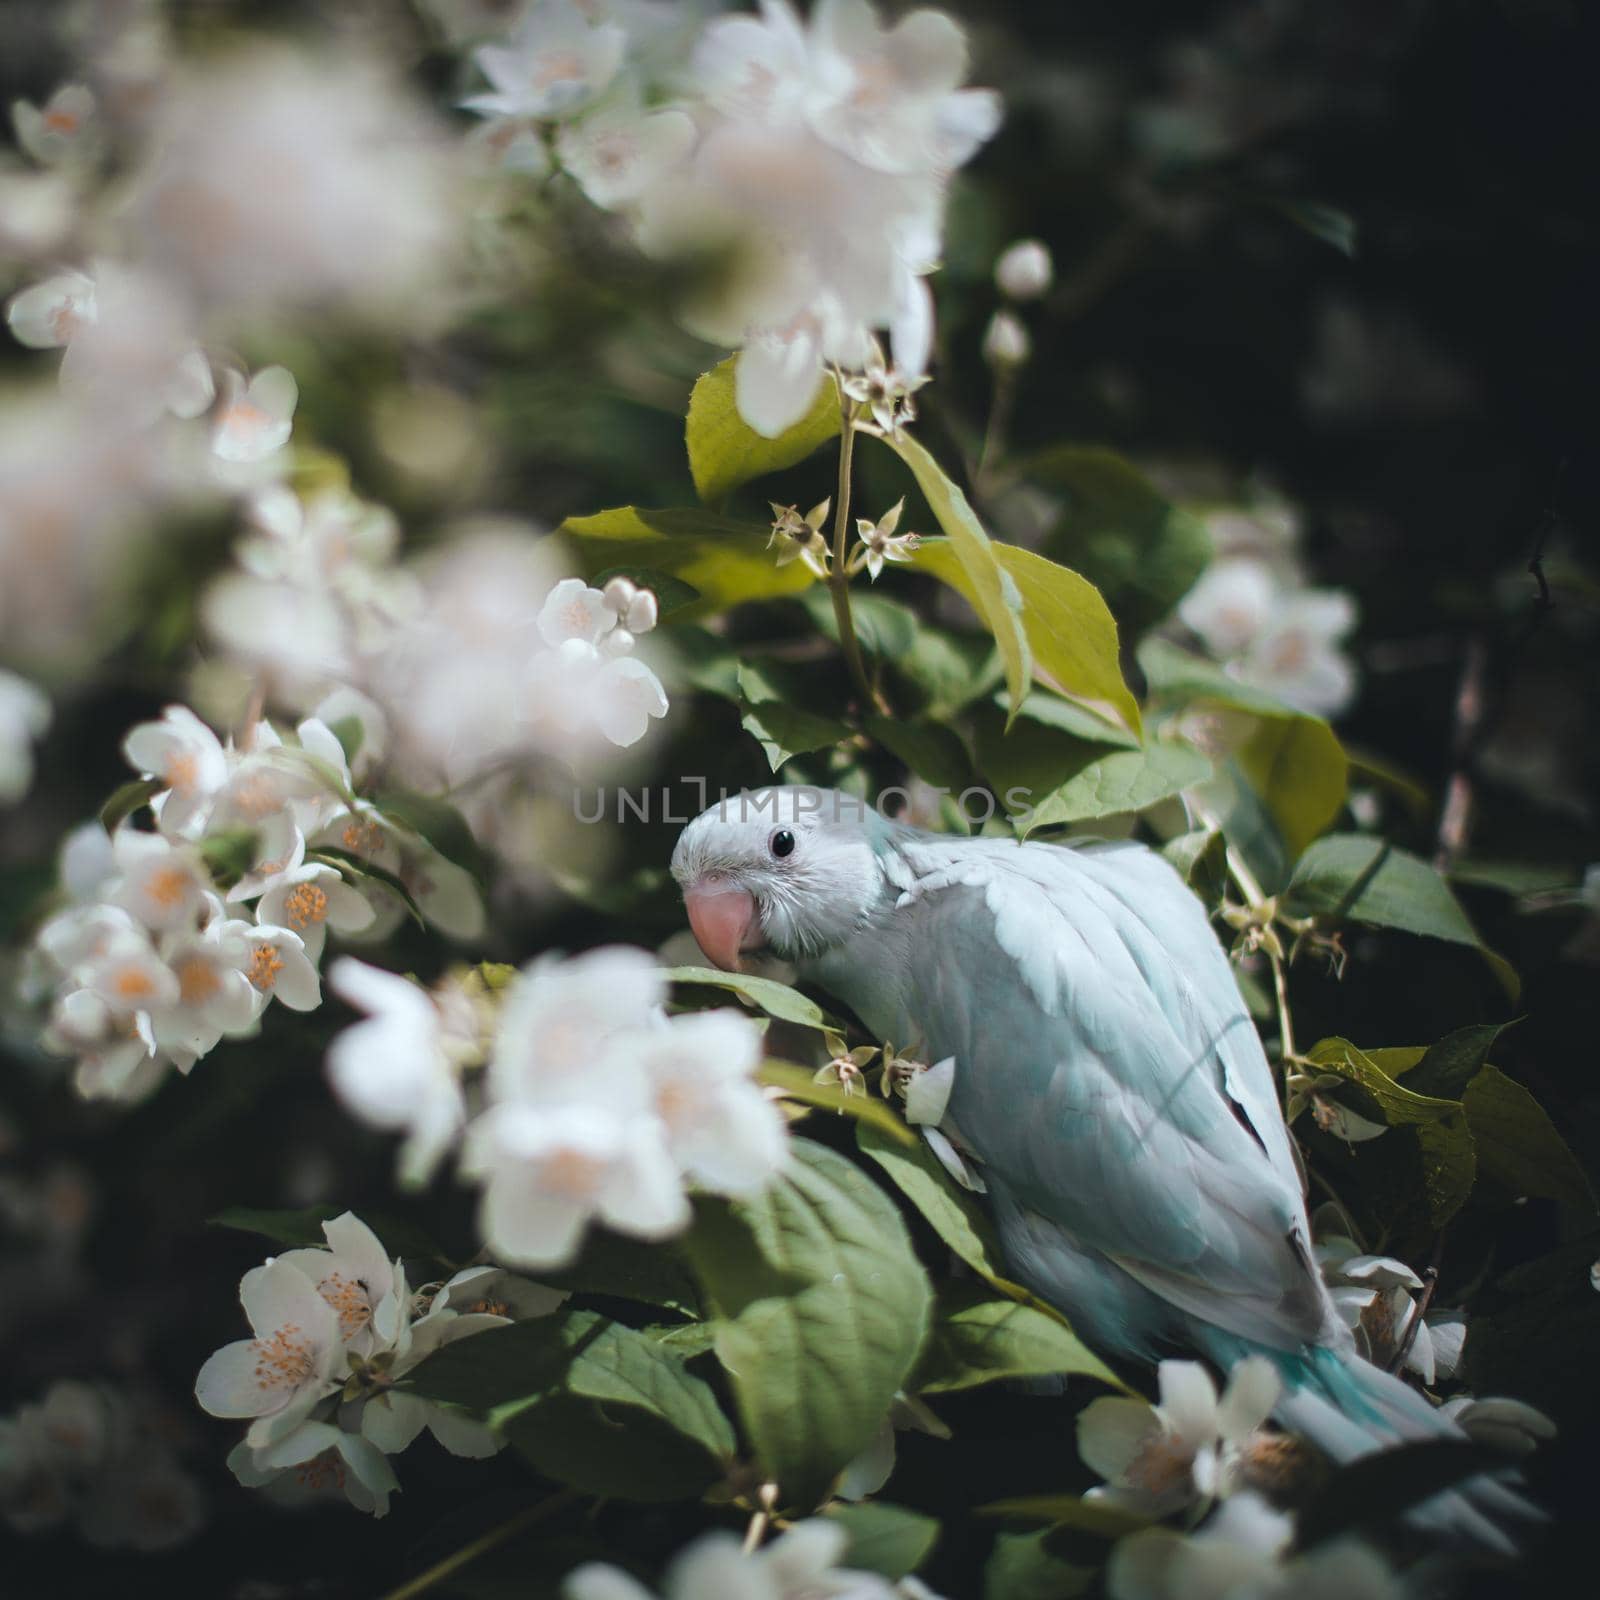 The rose-ringed or ring-necked parakeet, Psittacula krameri, fon the branch in summer garden